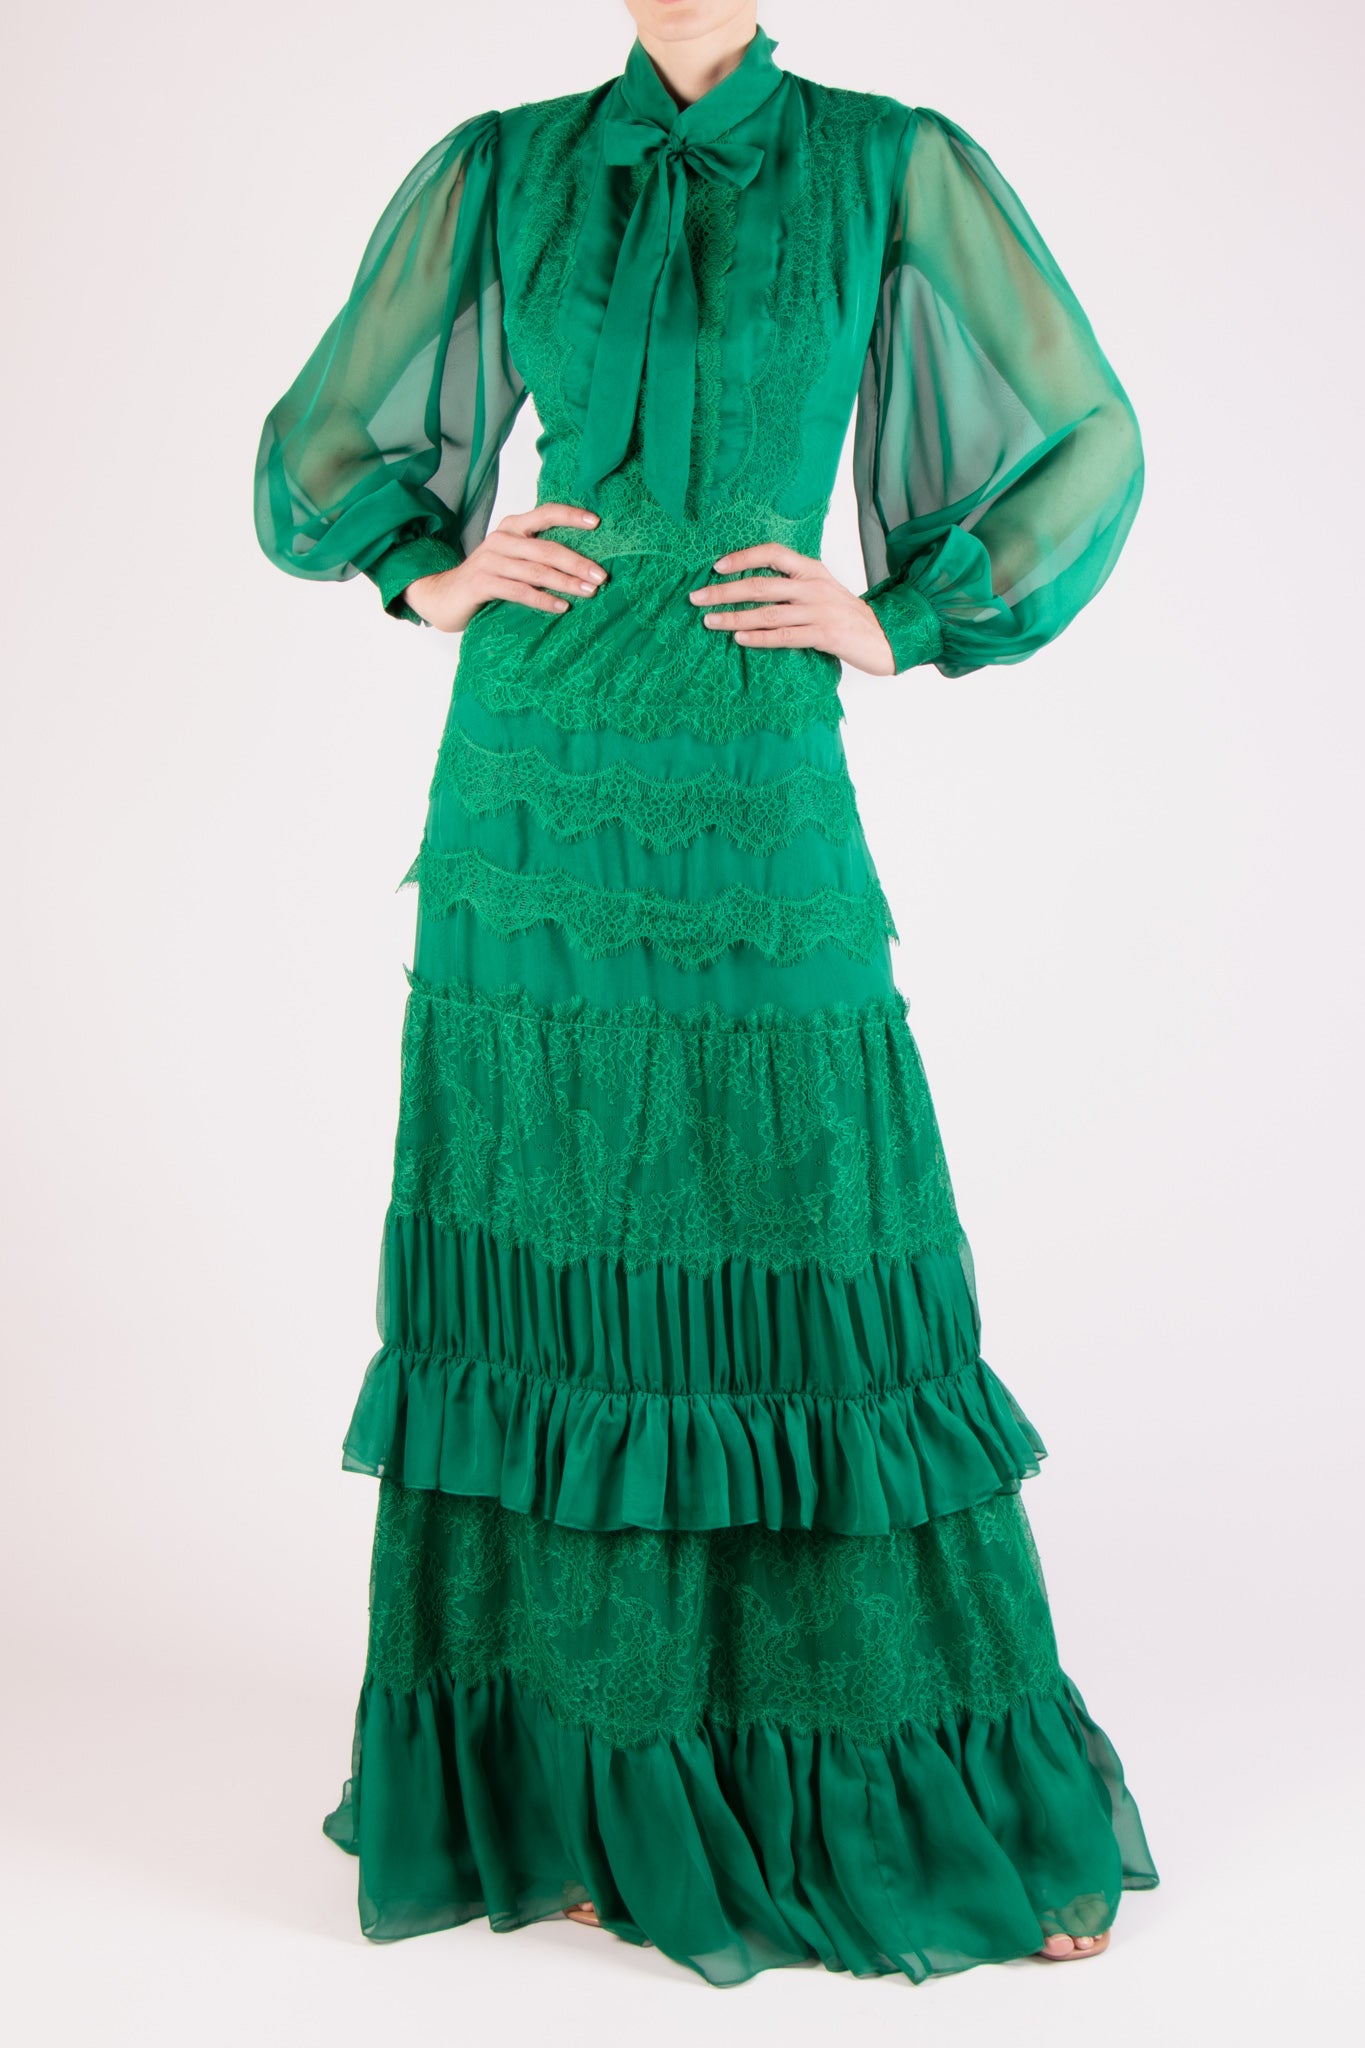 Vestido chifon cuello alto manga larga esmeralda – Lila Alta